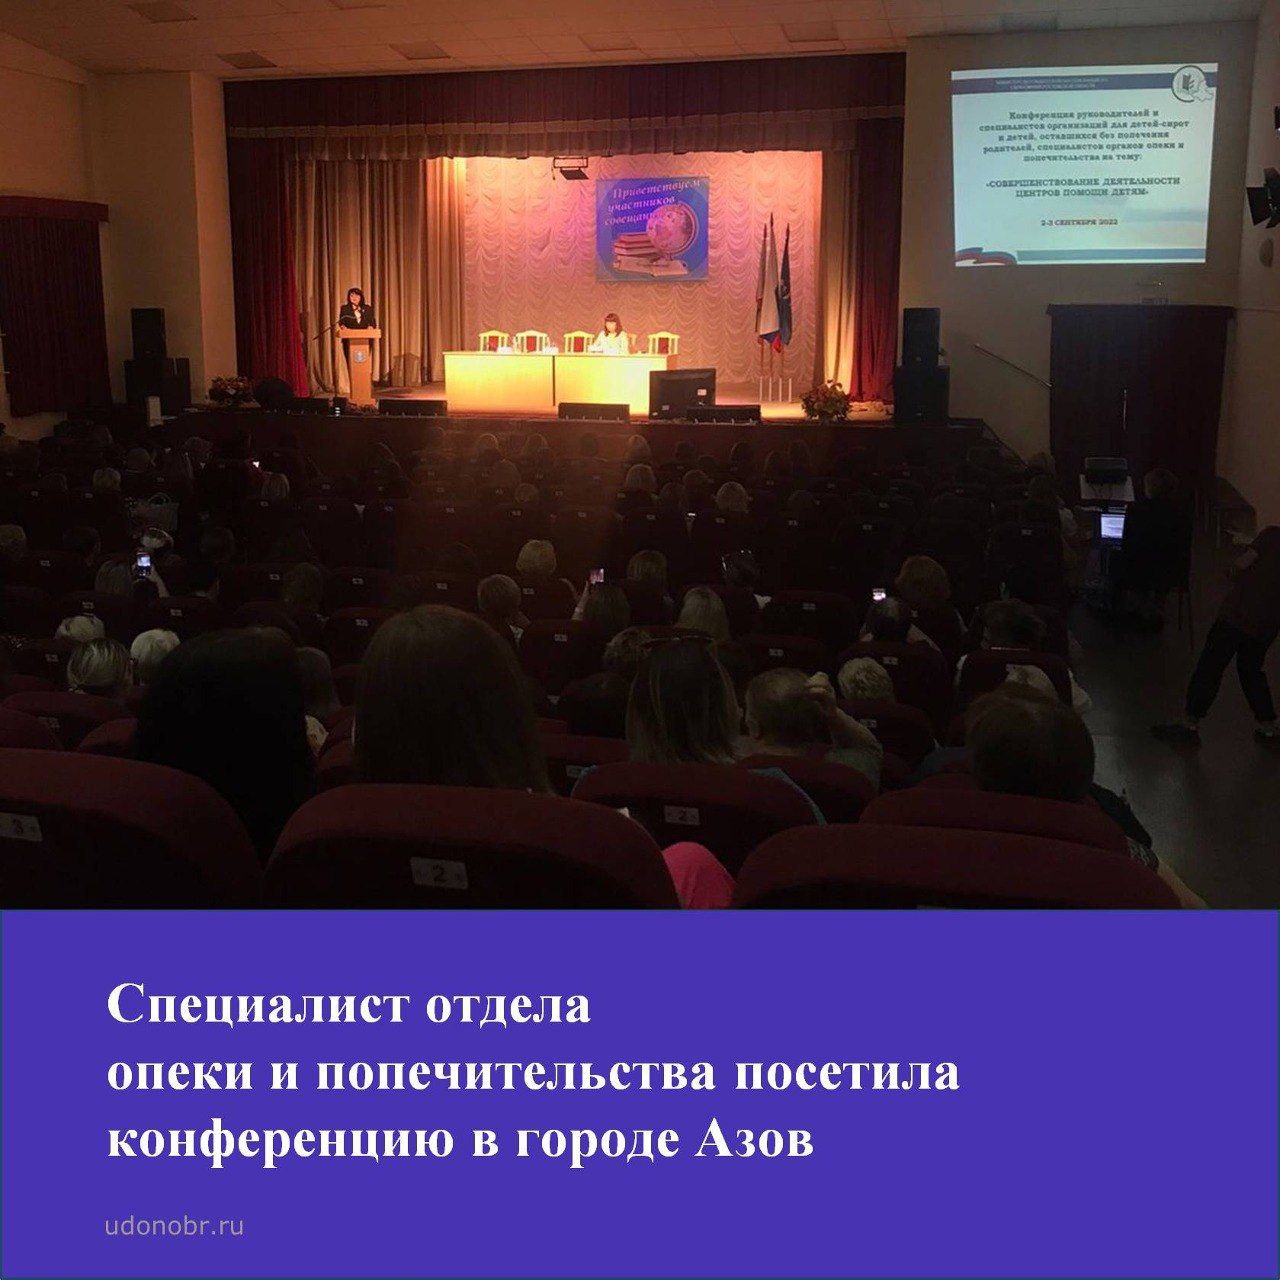 Специалист отдела опеки и попечительства посетила конференцию в городе Азов